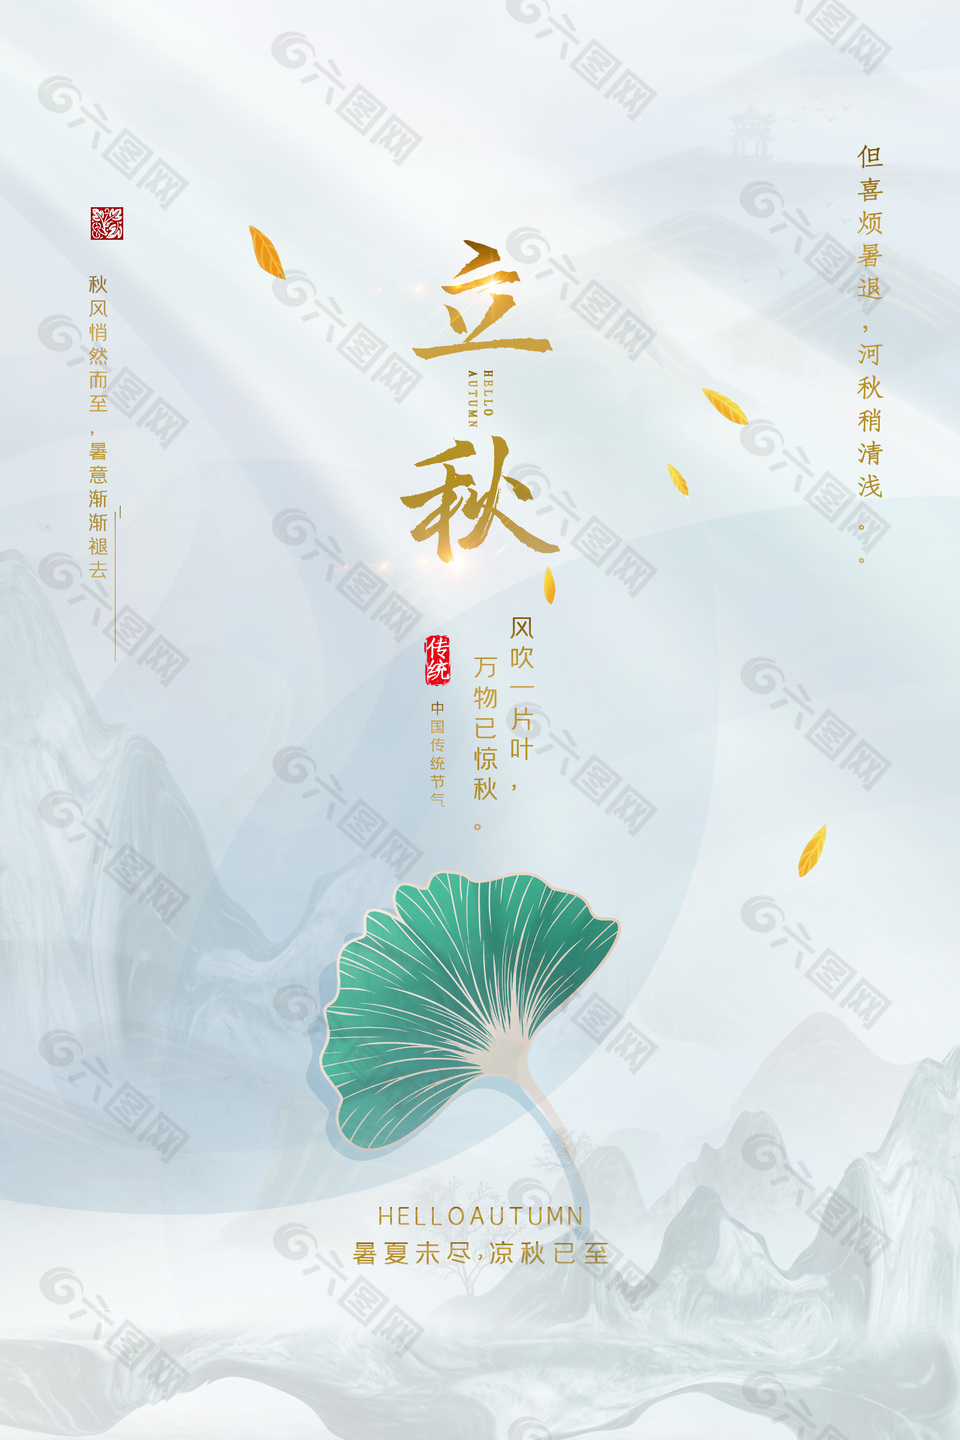 素雅中国风传统立秋节气海报素材下载